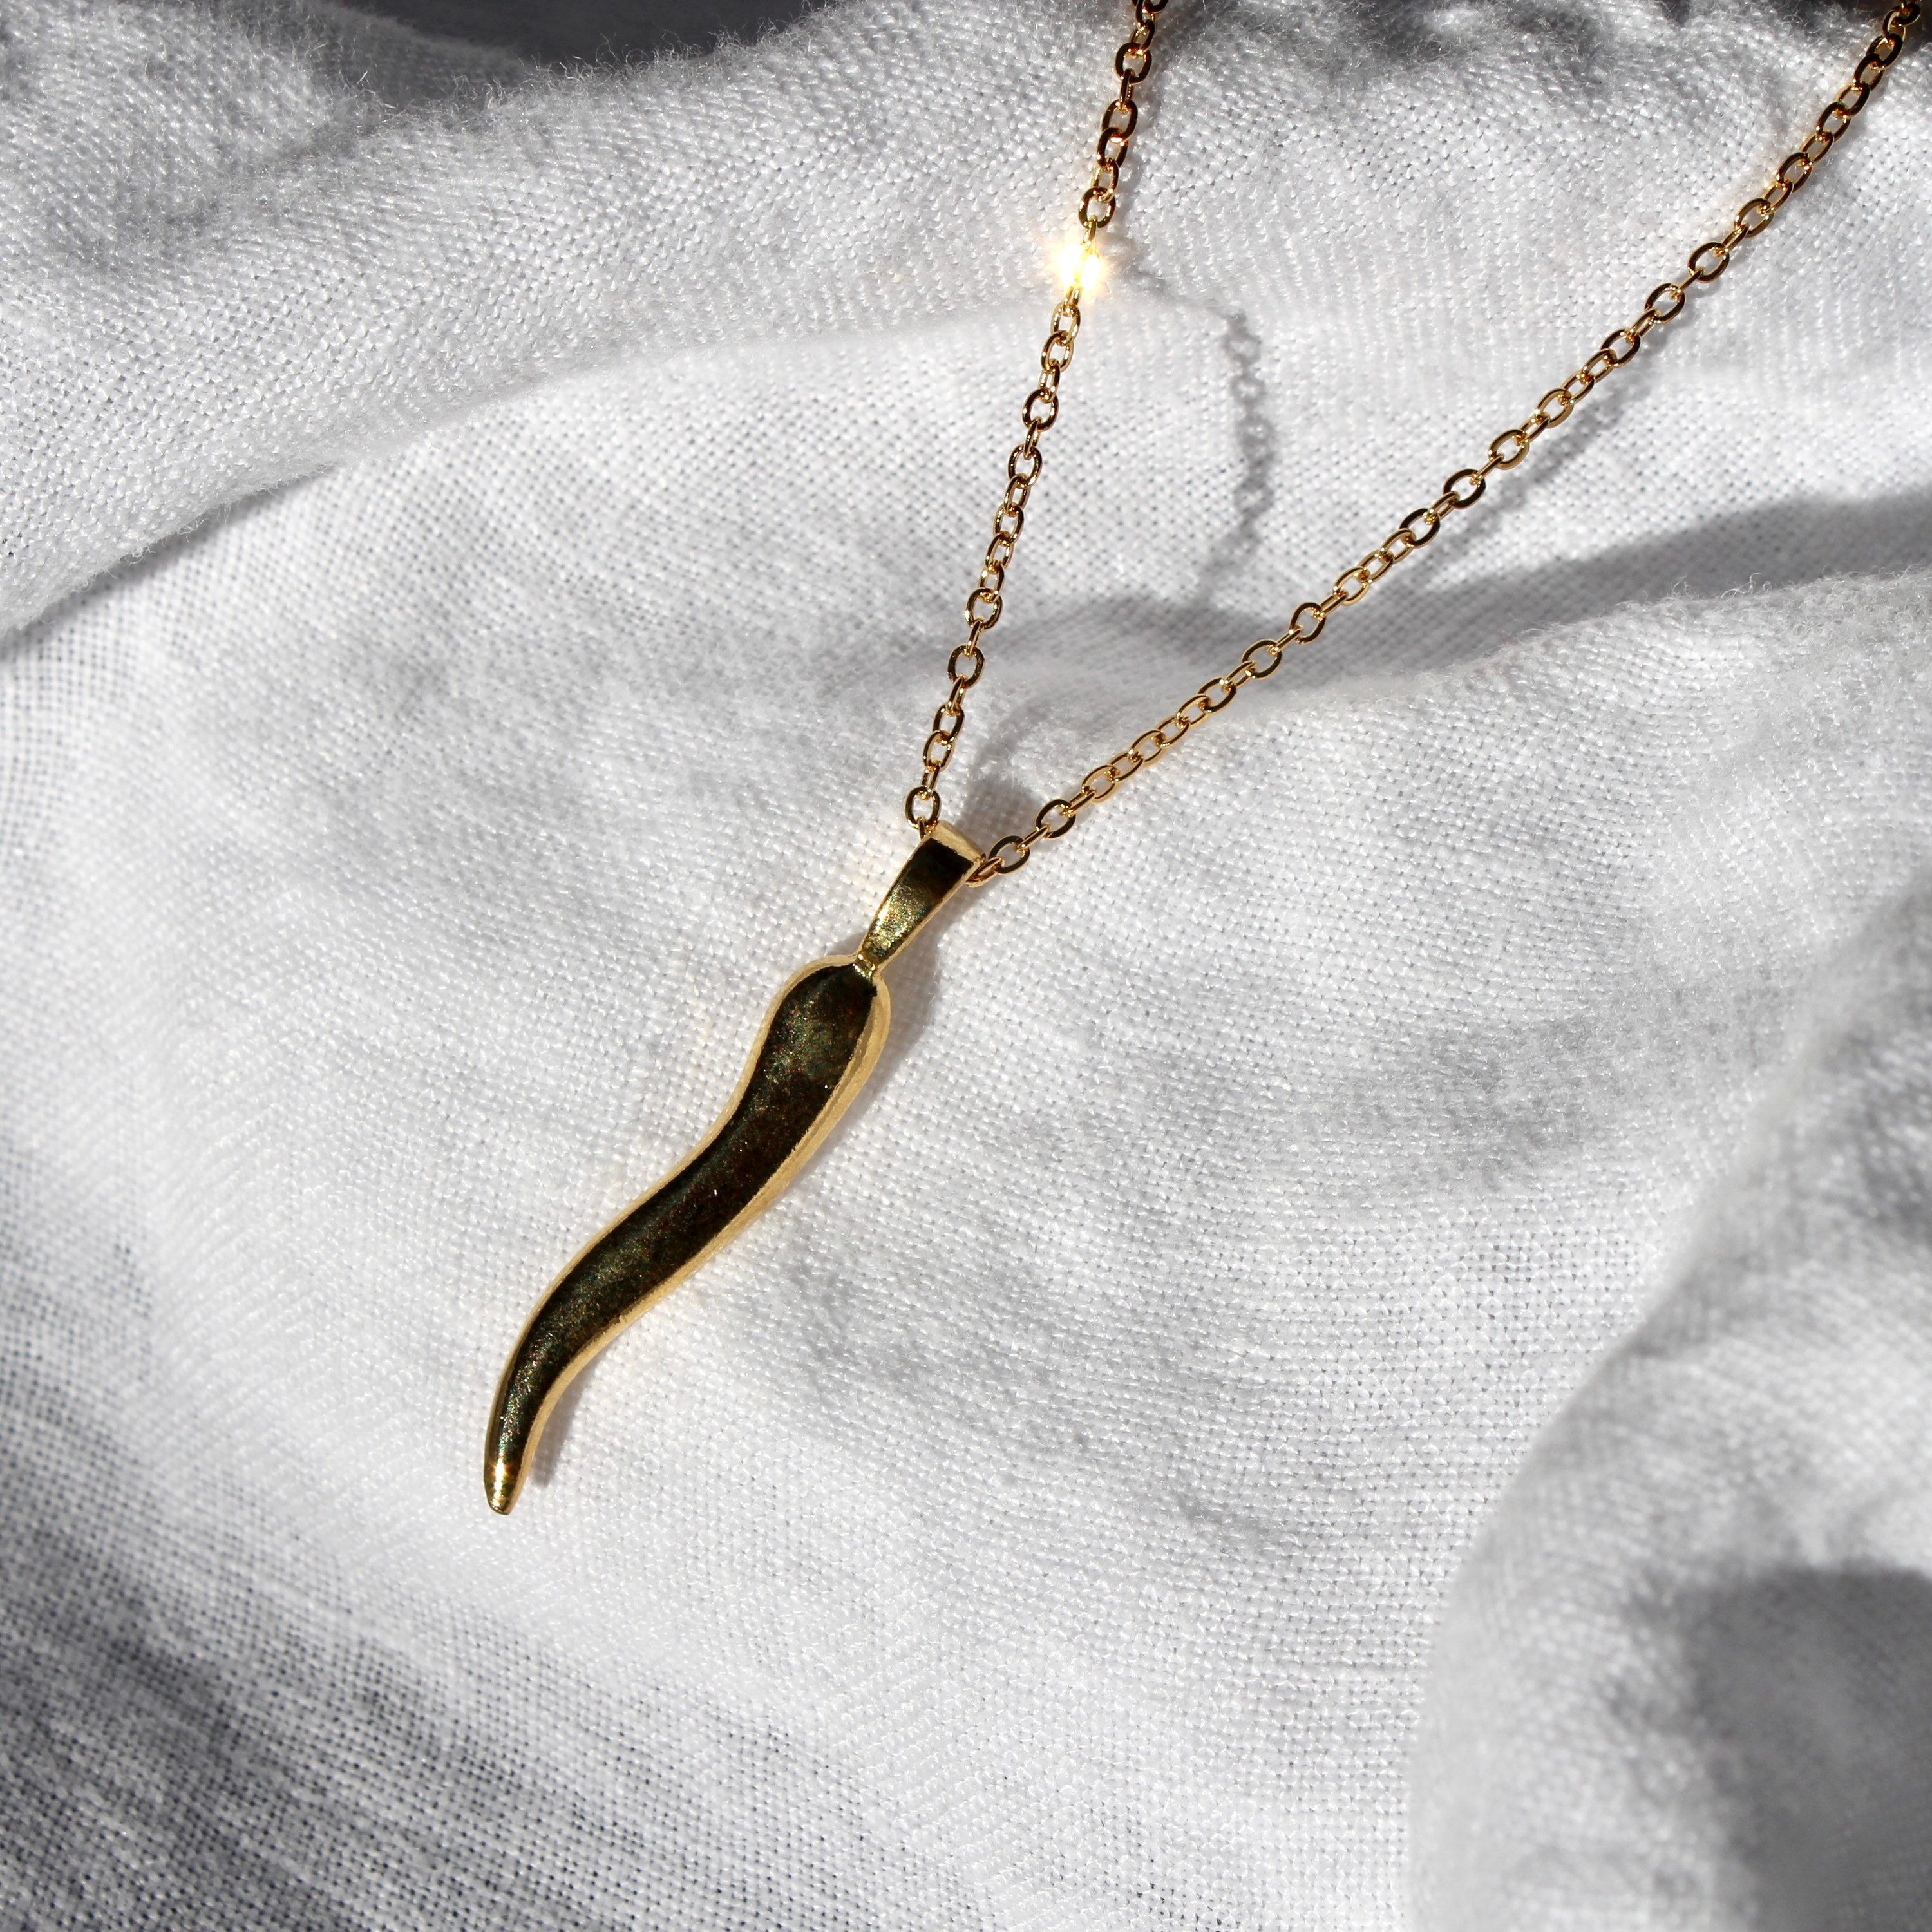 14k Gold Italian Horn Necklace / Cornicello Charm Pendant / Italian Necklace  / Unisex Men's Women's / Gift for Him & Her - Etsy